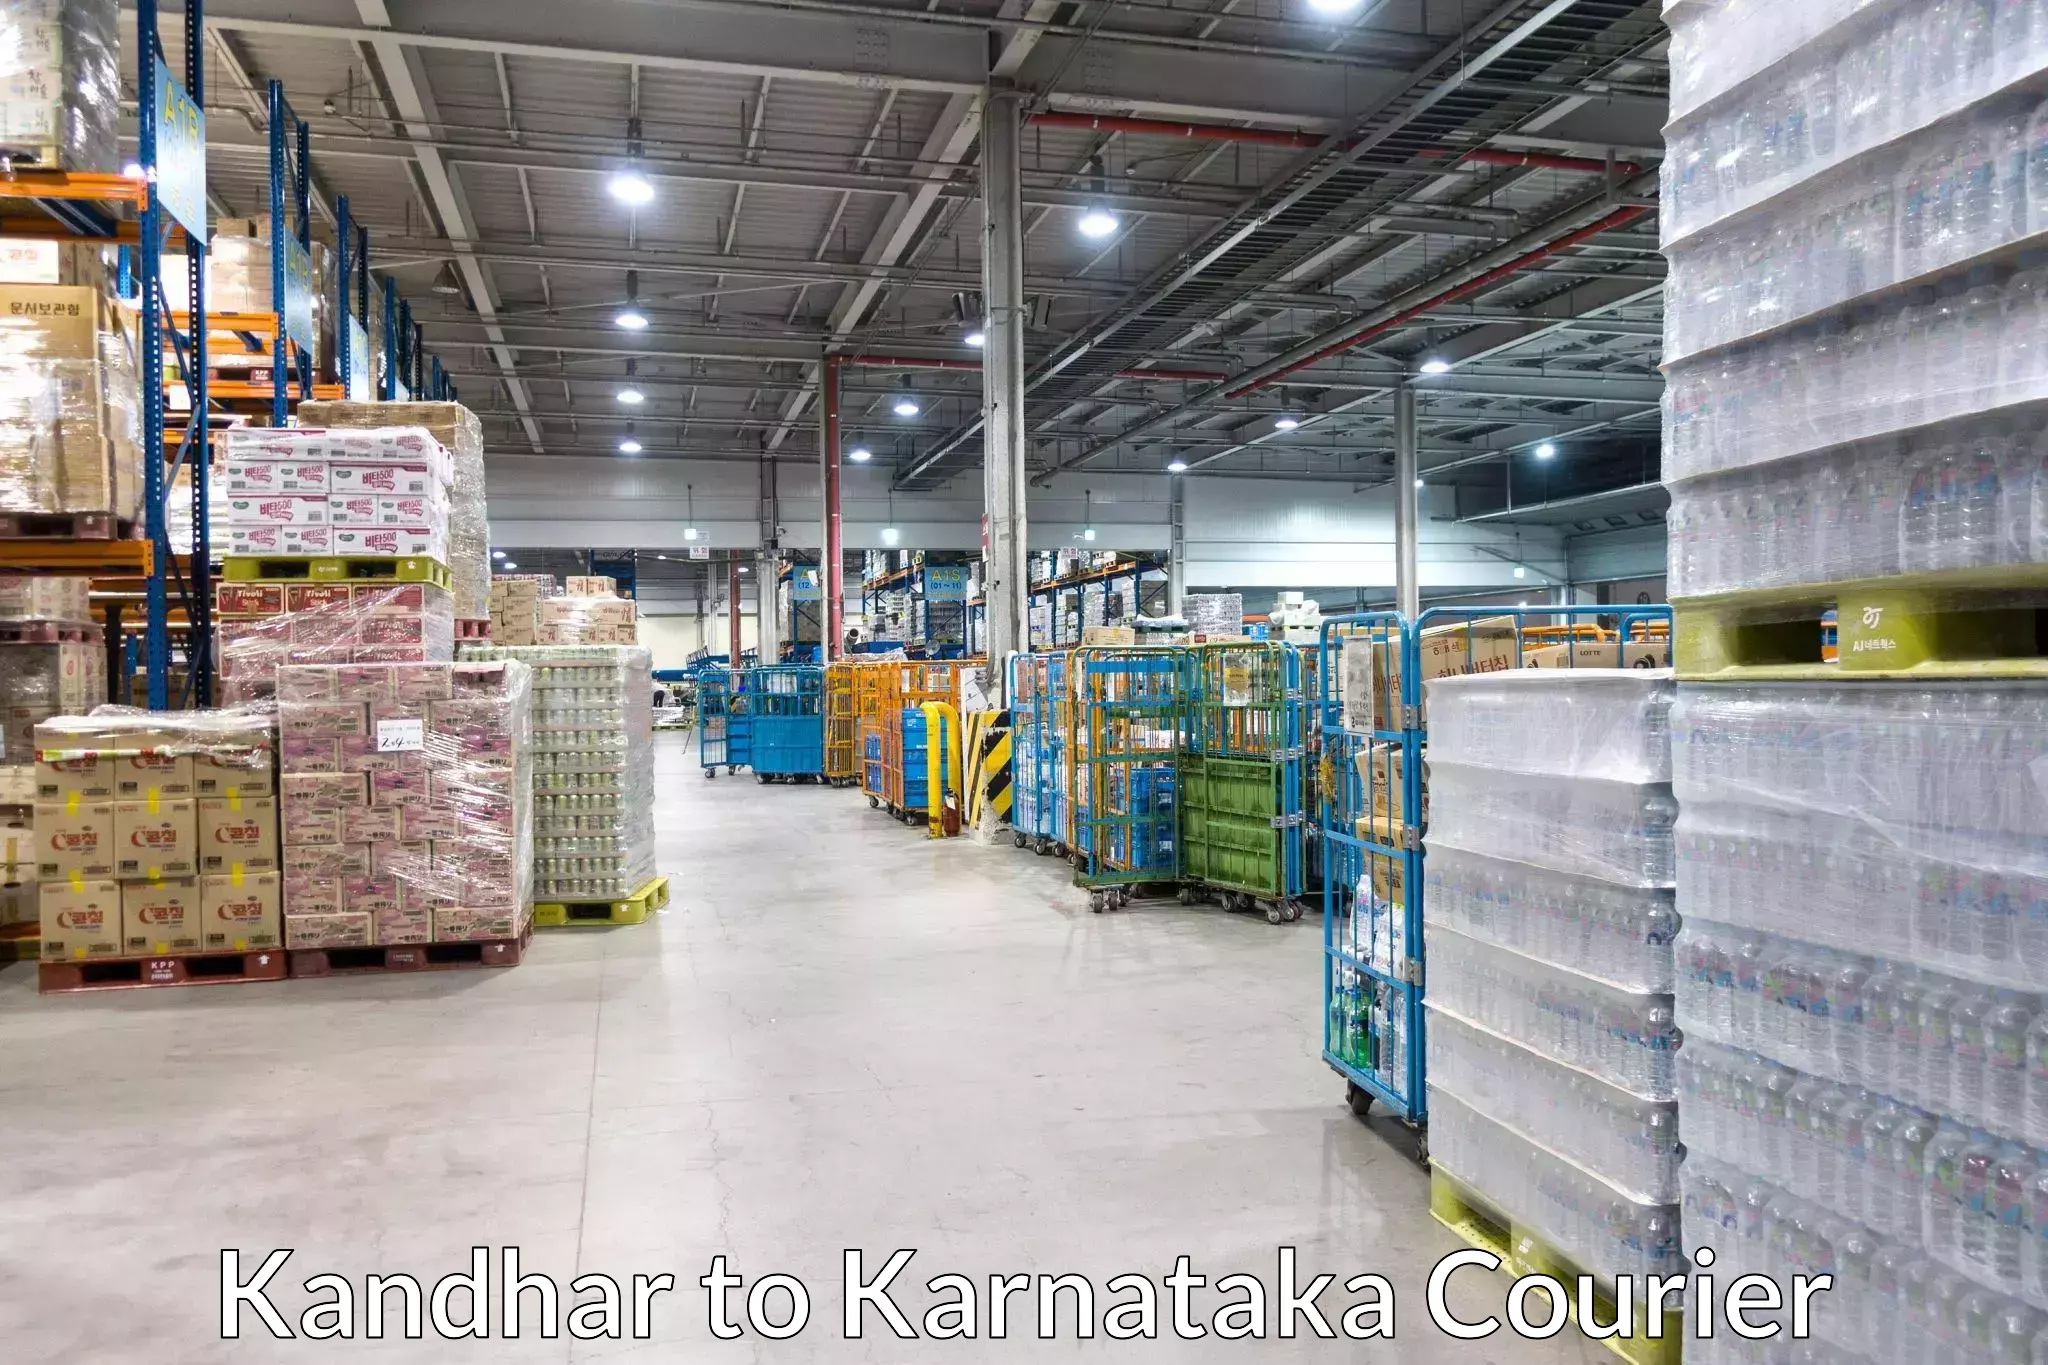 Professional home goods transport in Kandhar to Karnataka